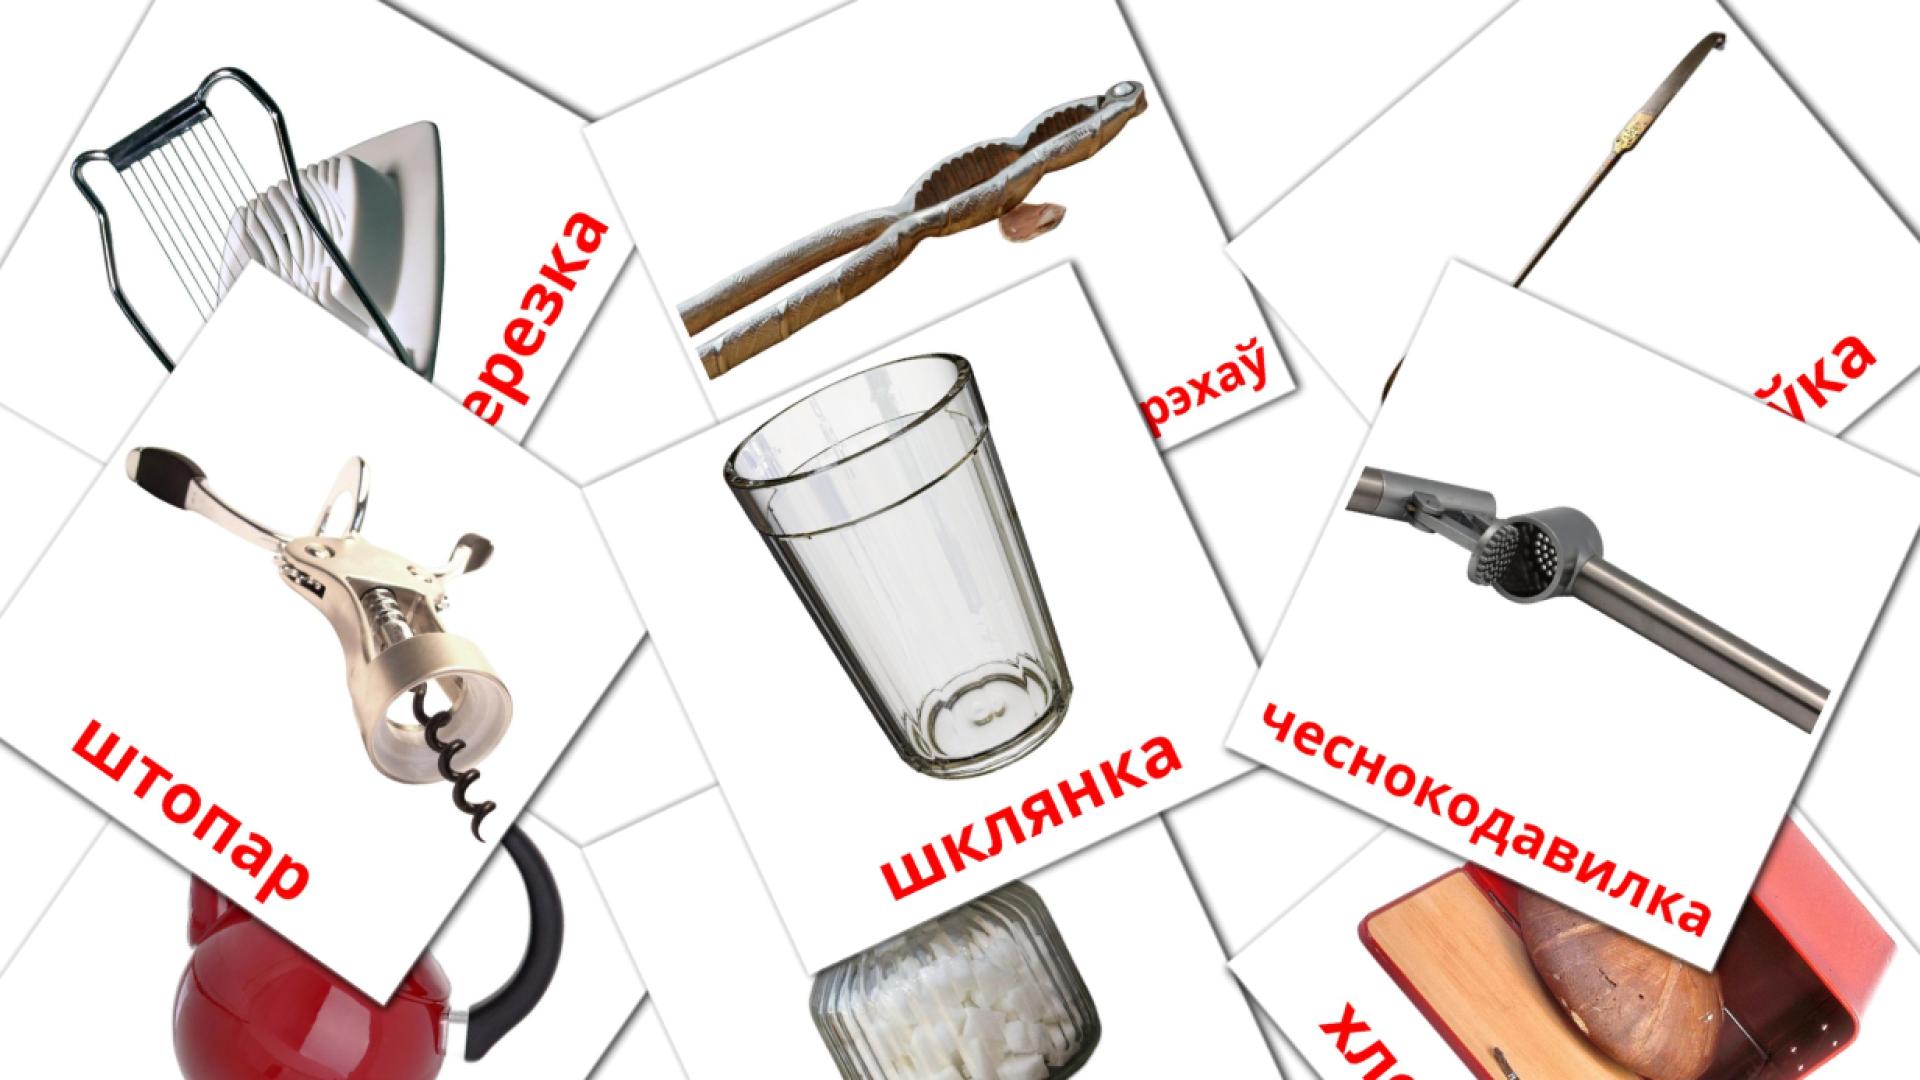 Кухня wit-russisch woordenschat flashcards